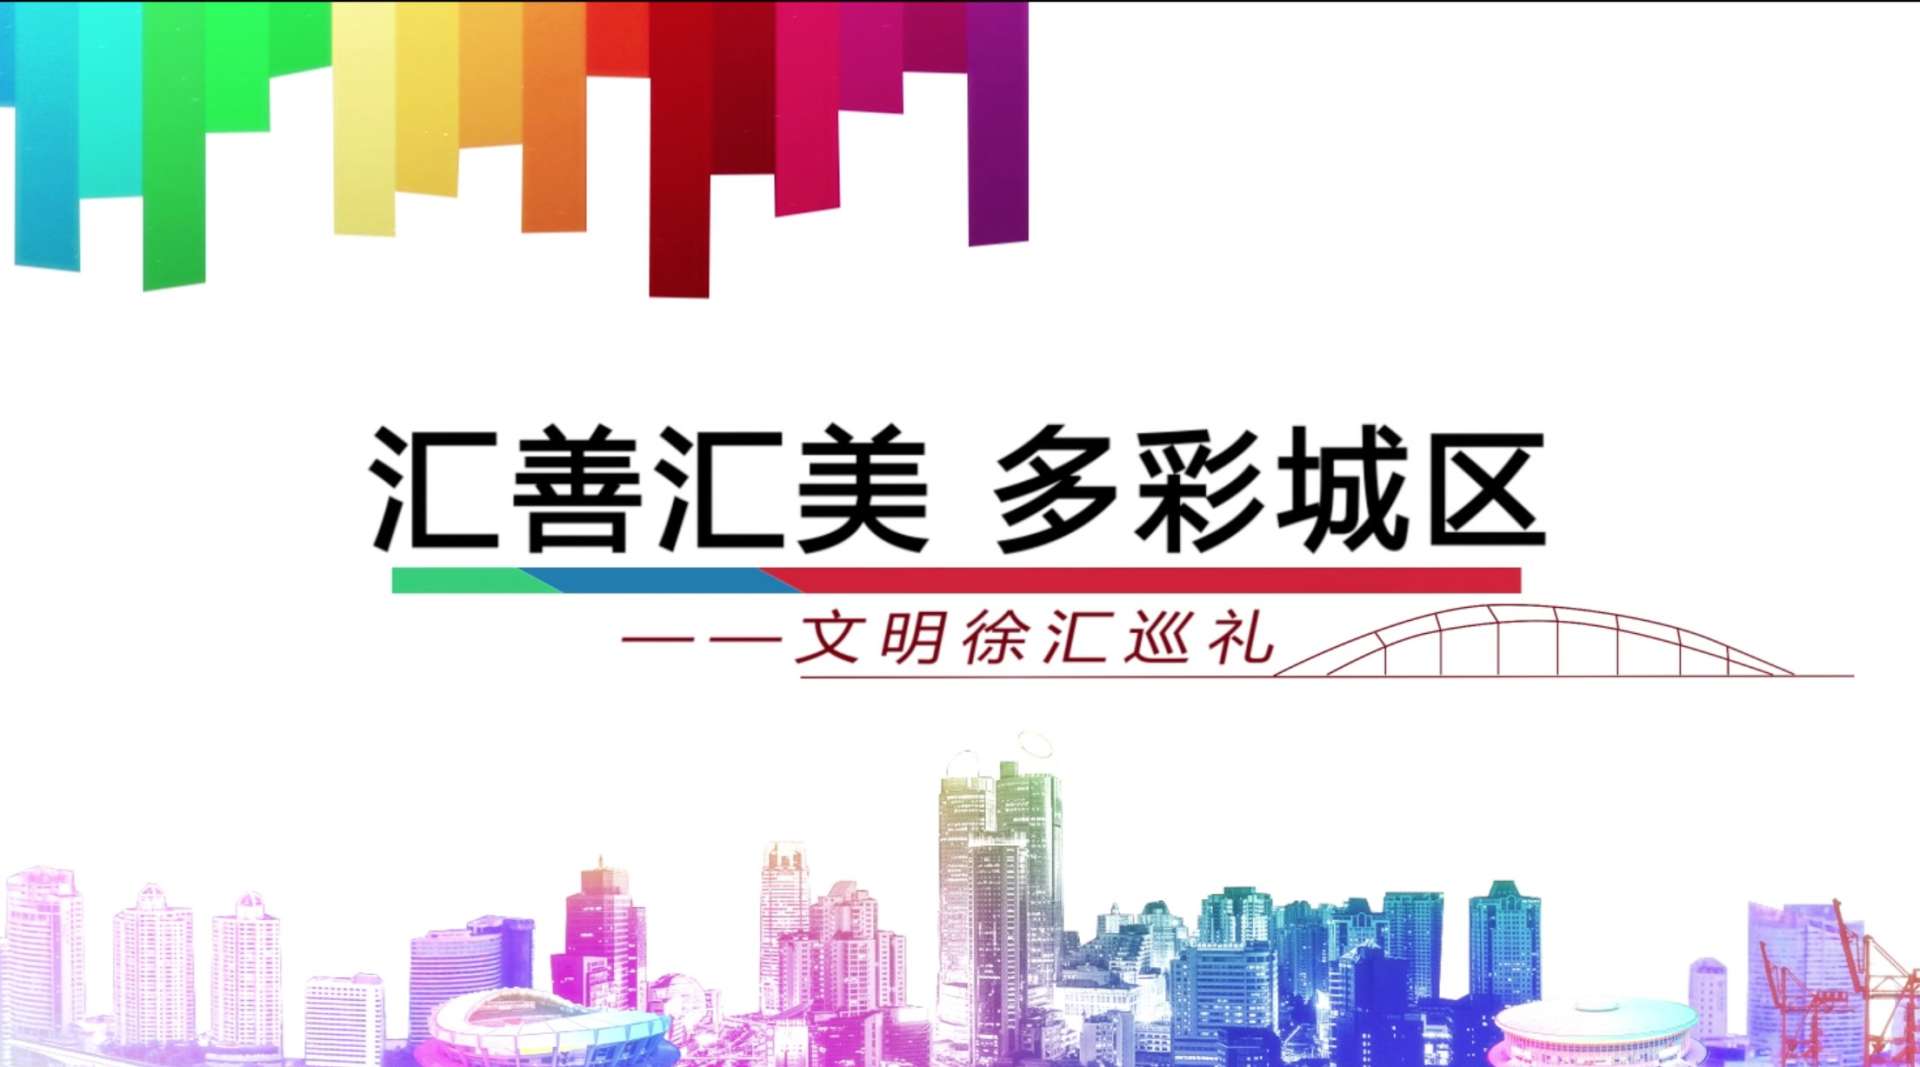 上海市徐汇区争创全国文明城区宣传片